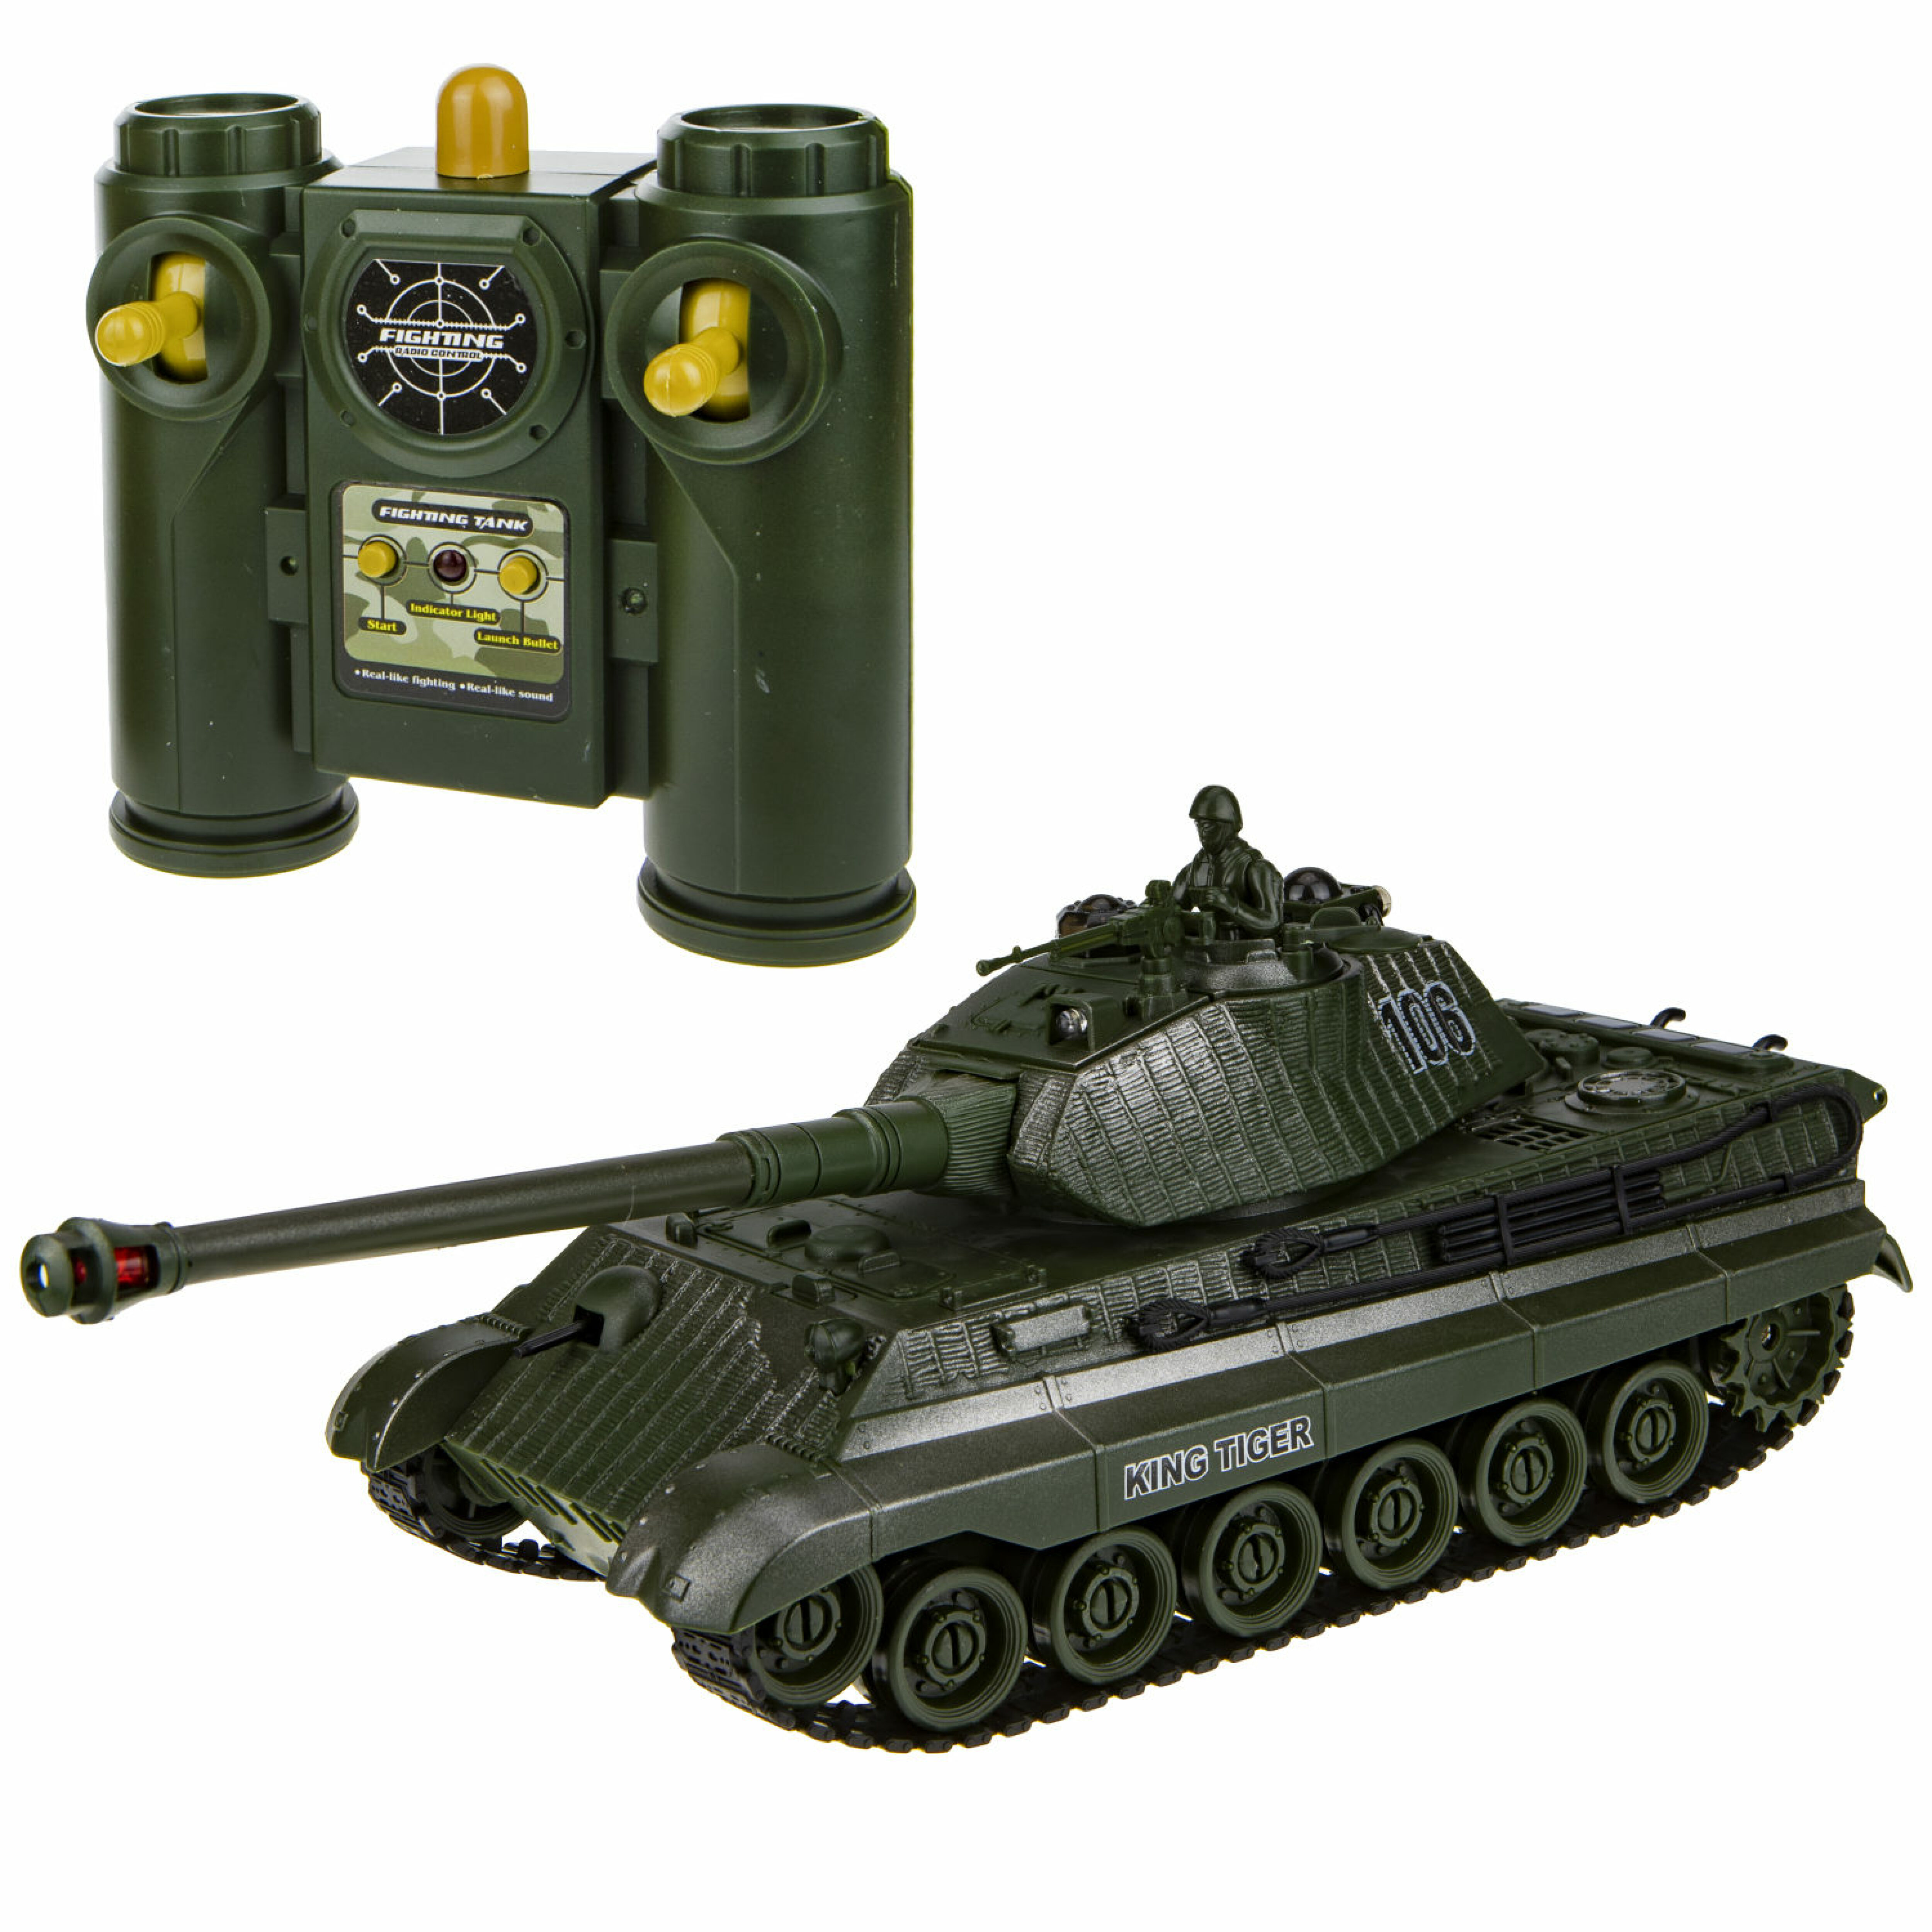 1toy Взвод танк на р/у, 2,4 ГГц, 1:28 (35 см), движение во все стороны, вращение башни, свет и звук, индикатор попаданий, подходит для танкового боя Т17685 - фото 1